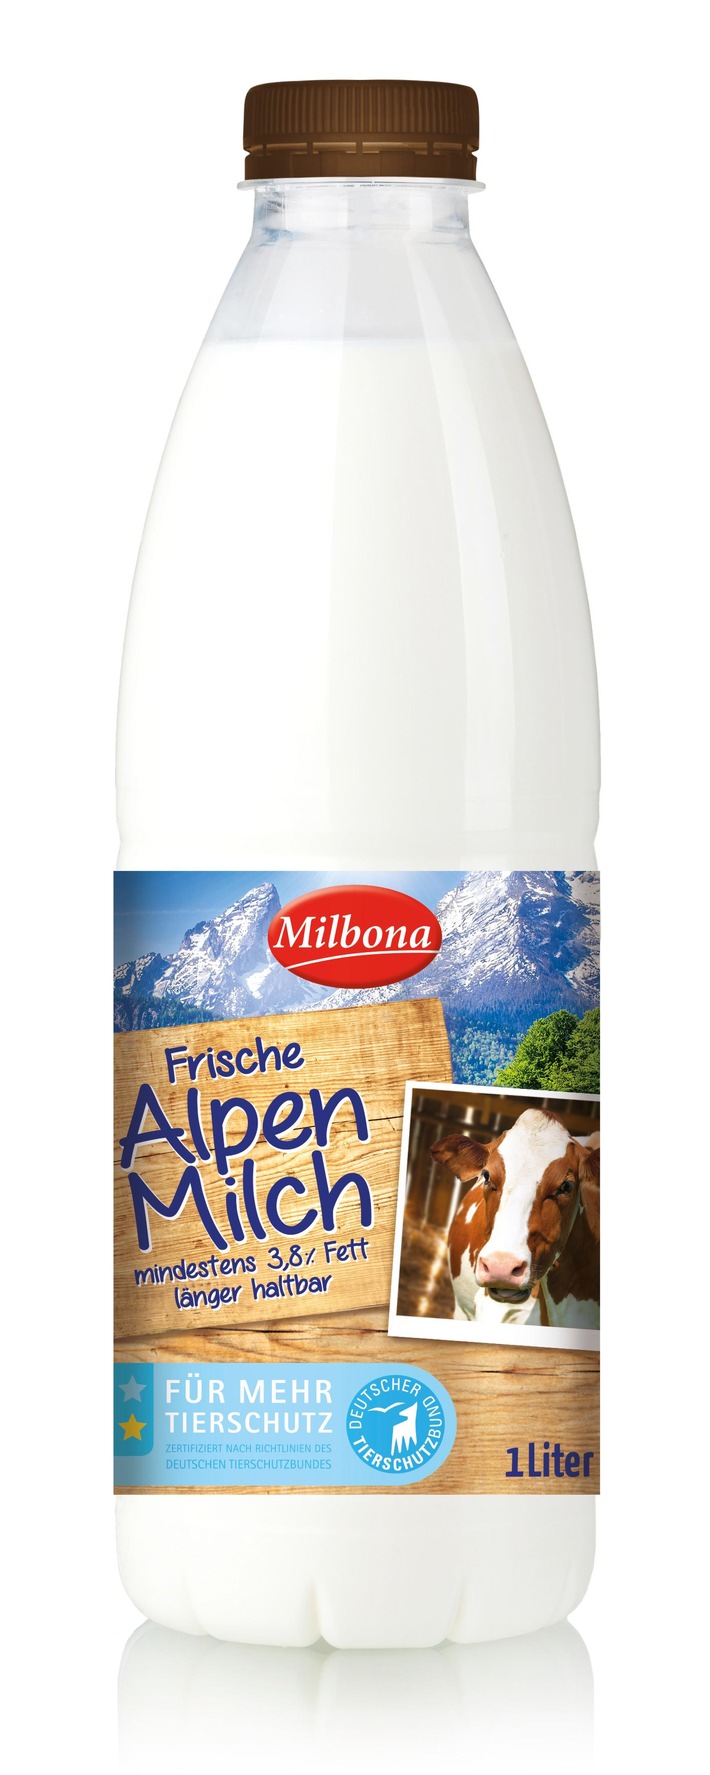 Lidl Deutschland erweitert Milchangebot mit Tierschutzlabel / Ab Anfang September führt Lidl zertifizierte Alpenmilch ein - Nachhaltige Kaufalternative für Verbraucher